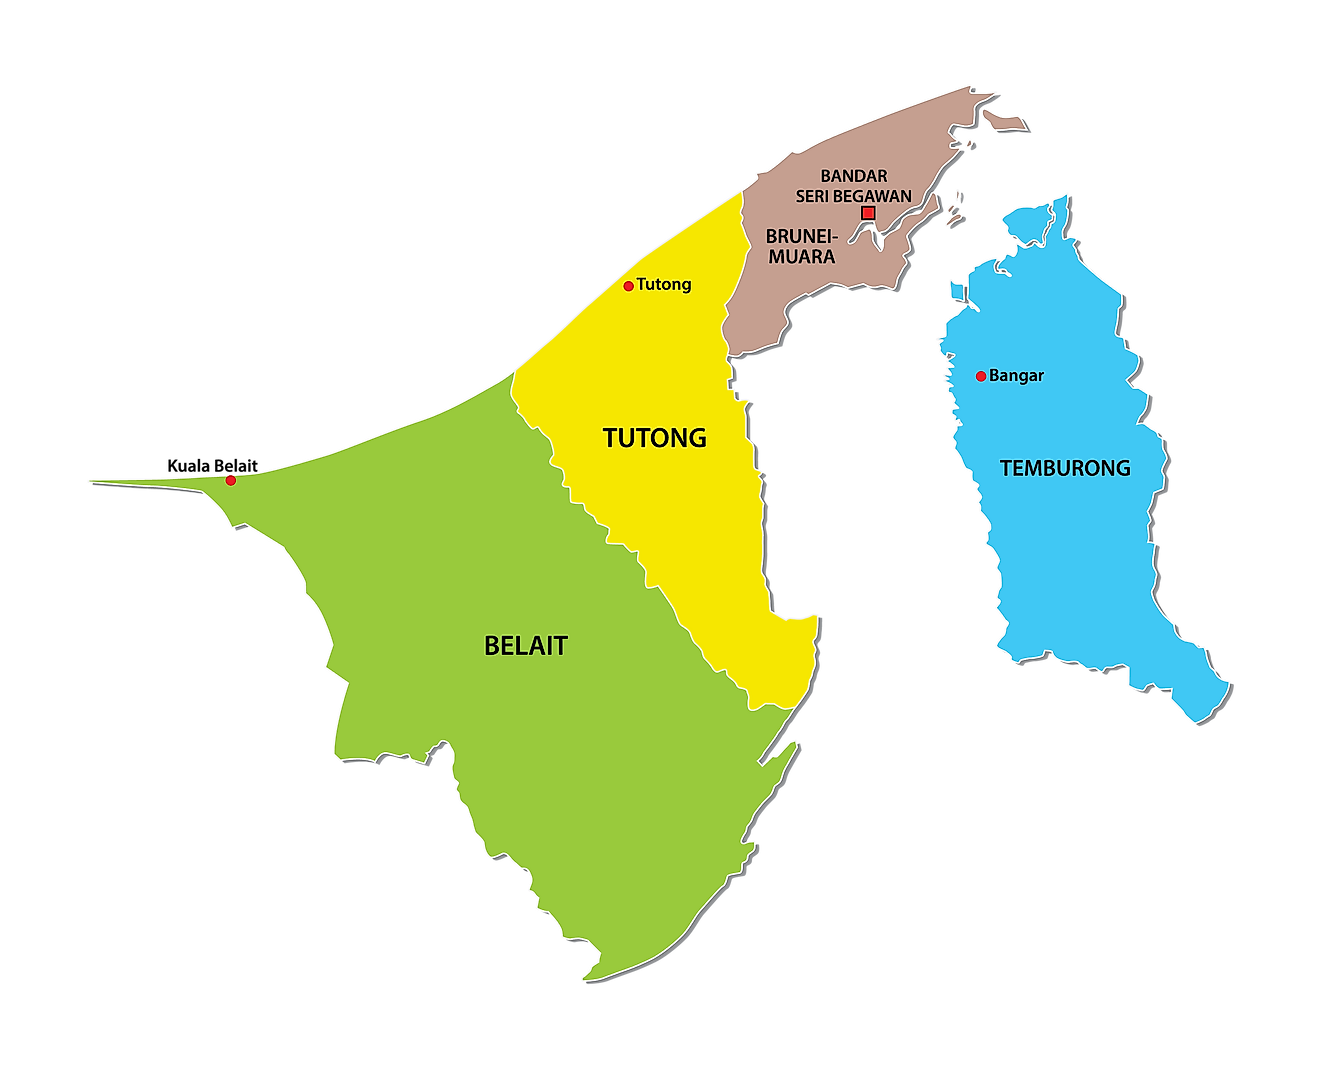 Mapa político de Brunei que muestra los 4 distritos de Brunei, importantes centros urbanos y la capital nacional de Bander Seri Begawan.